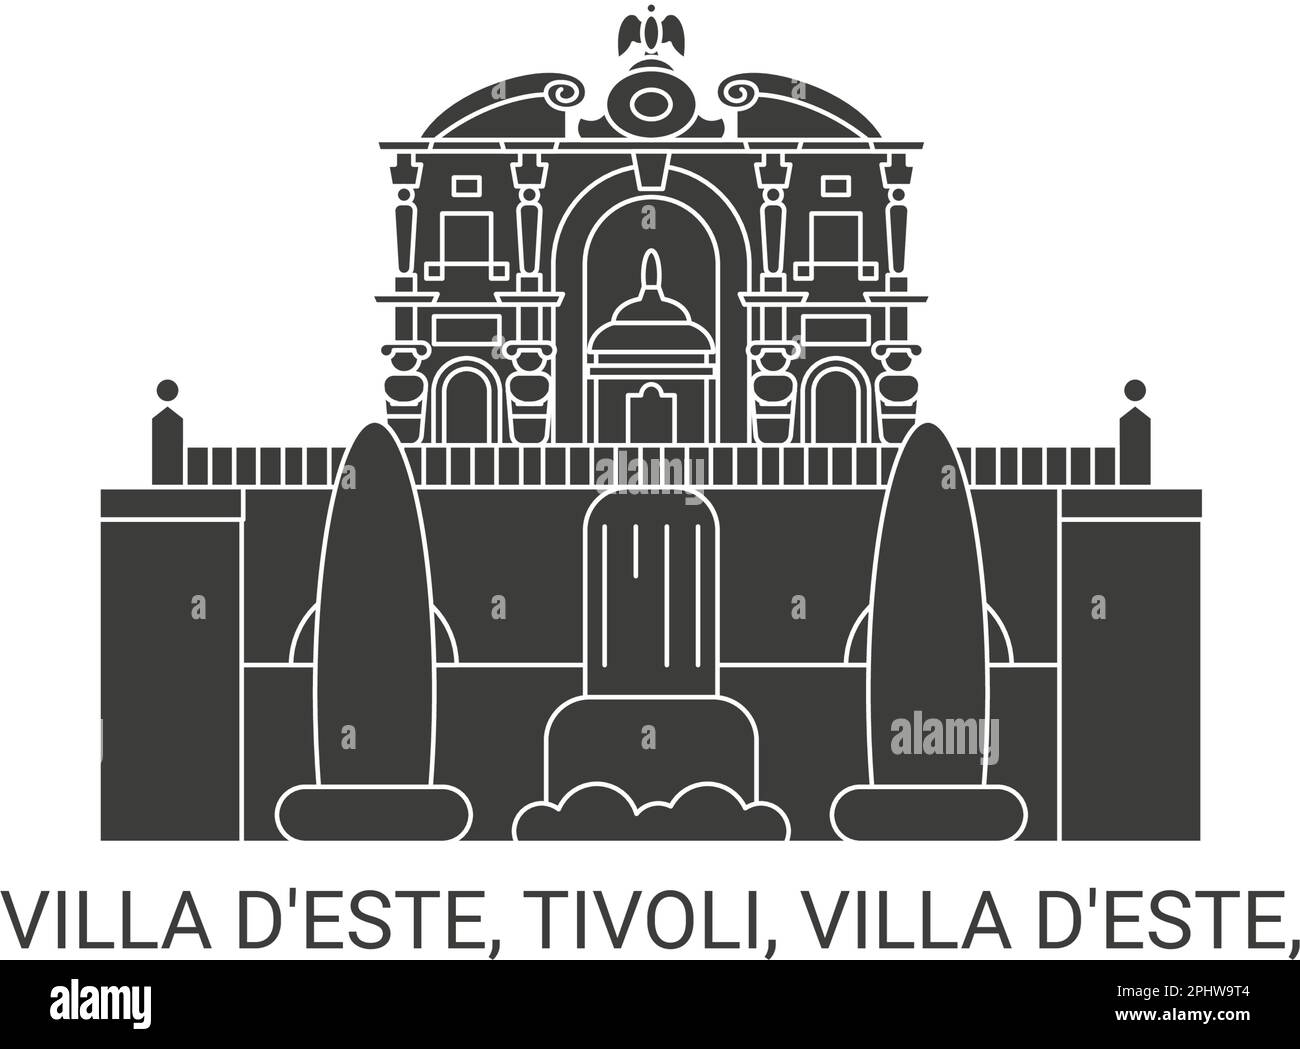 Italy, Villa D'este, Tivoli, Villa D'este, travel landmark vector illustration Stock Vector